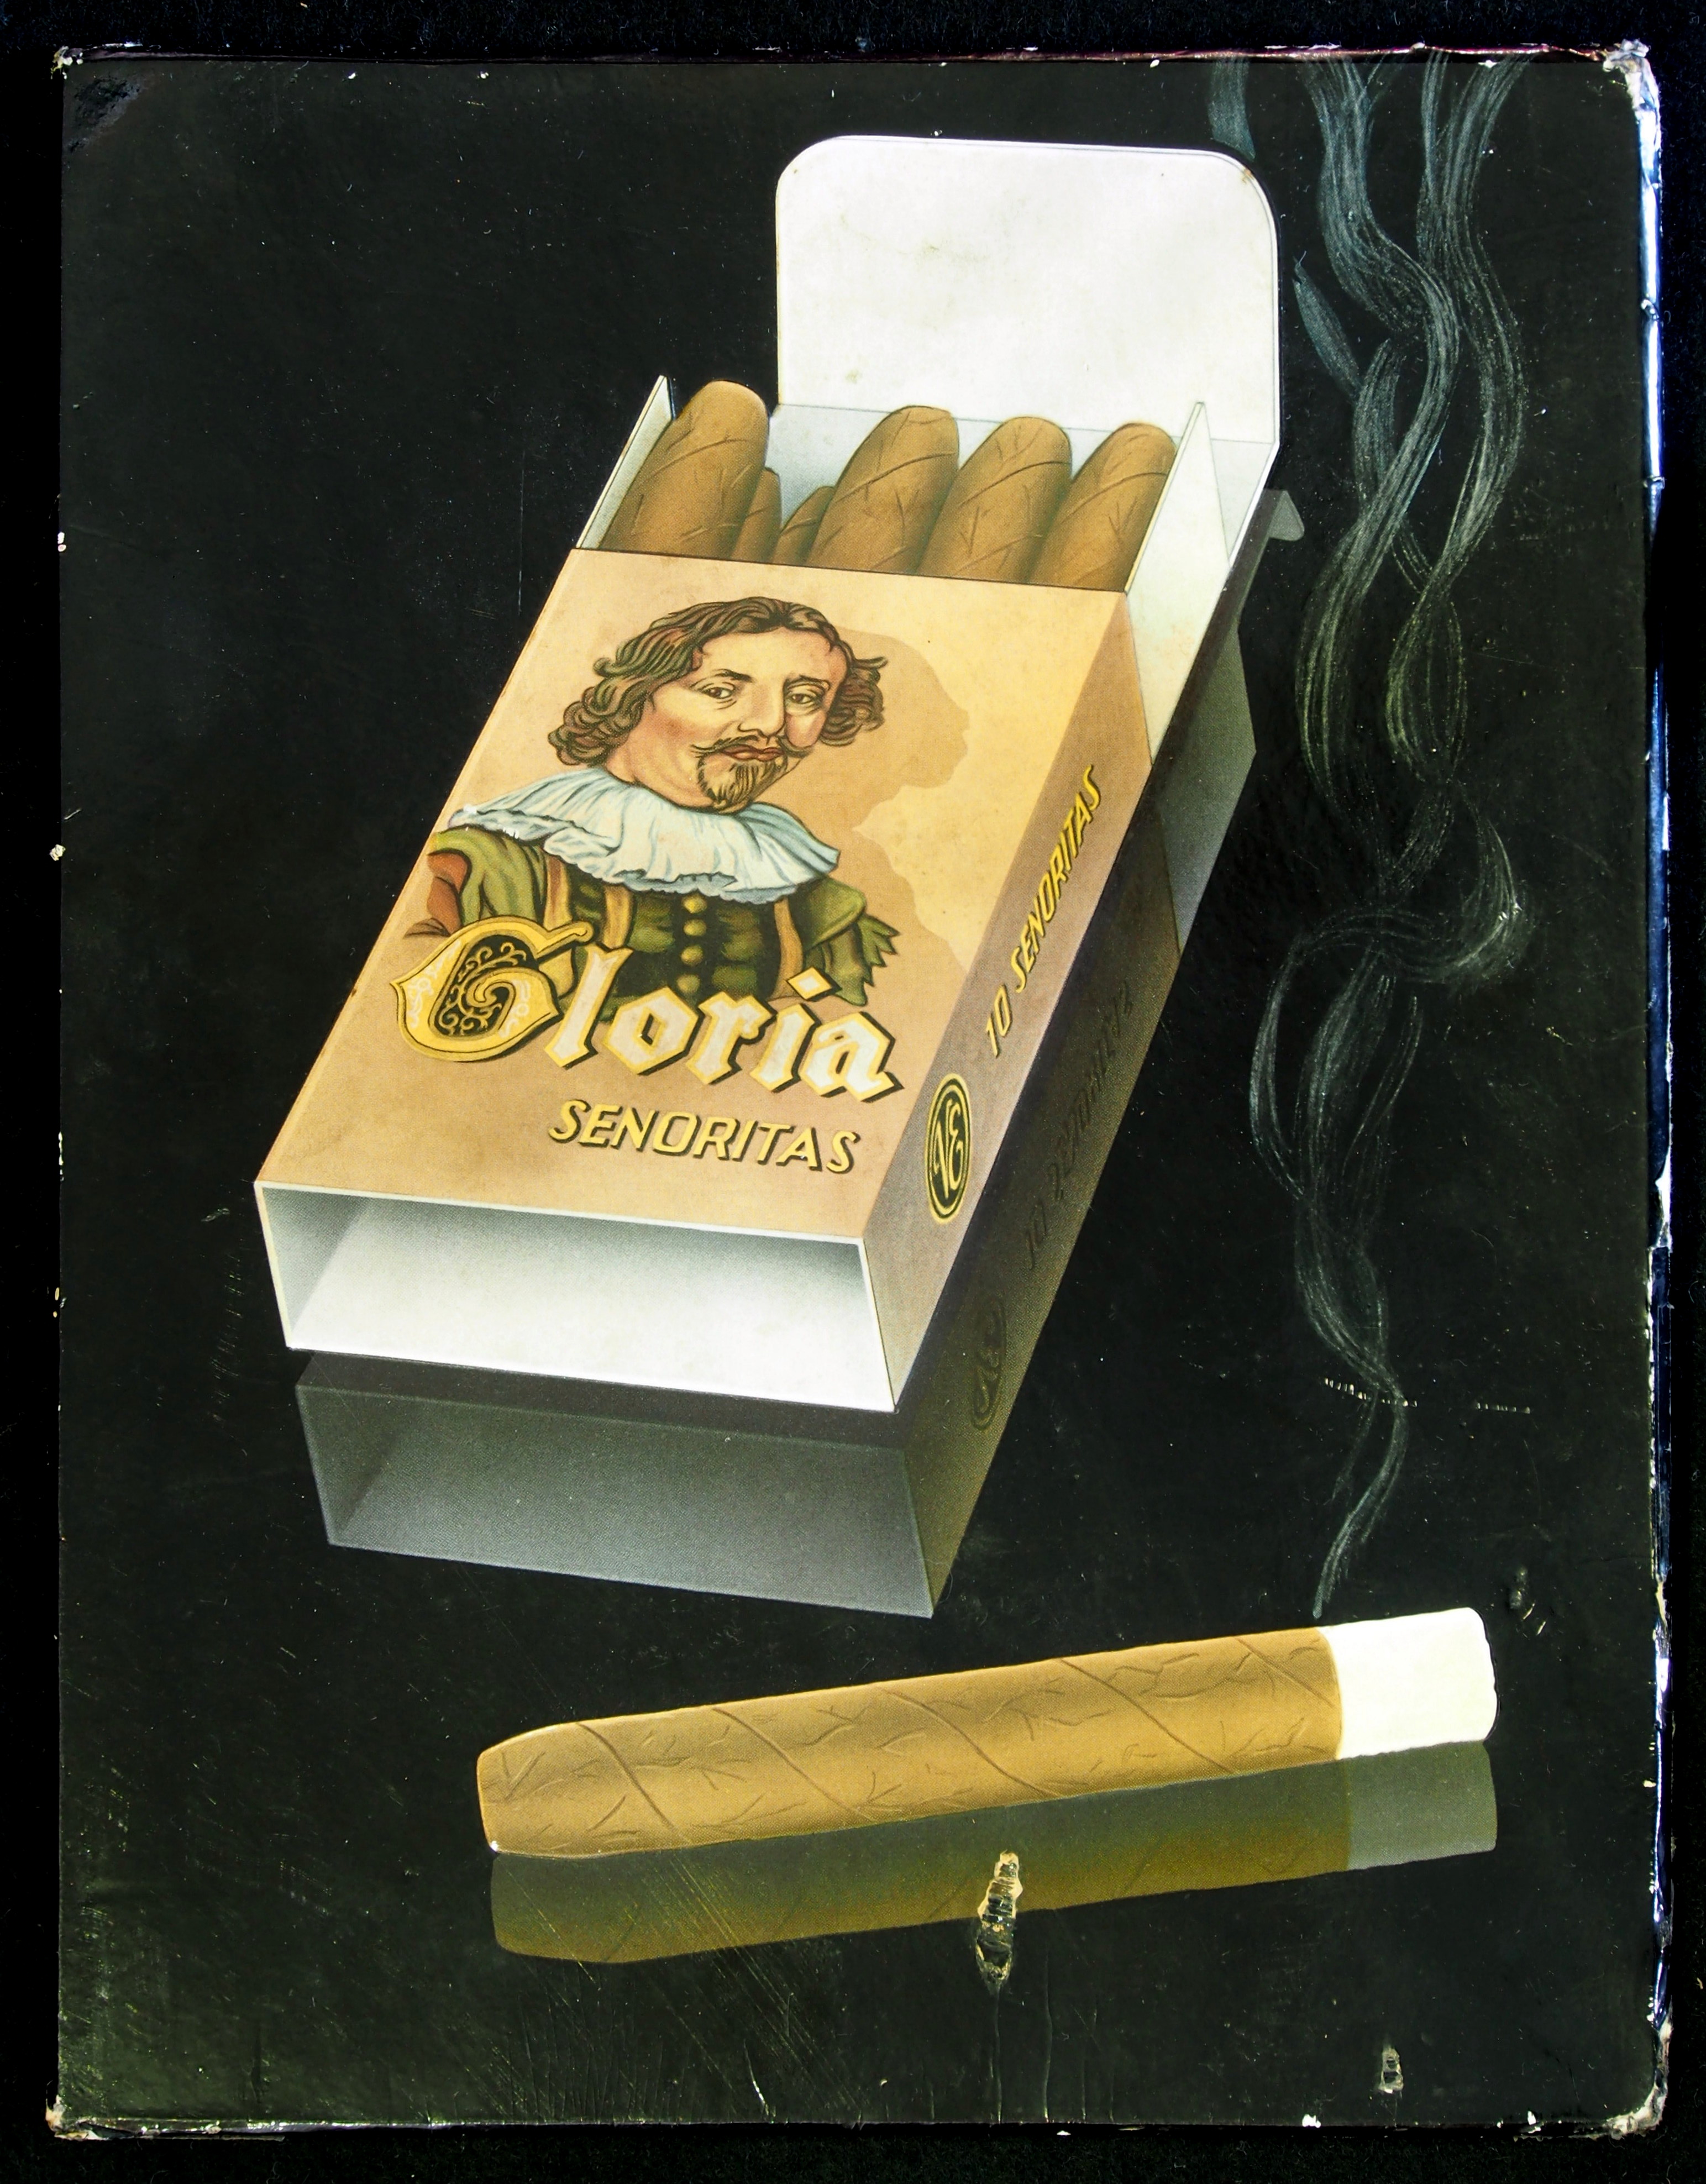 Catastrofe roestvrij alleen File:Gloria Senoritas sigaren reclame van karton.JPG - Wikimedia Commons